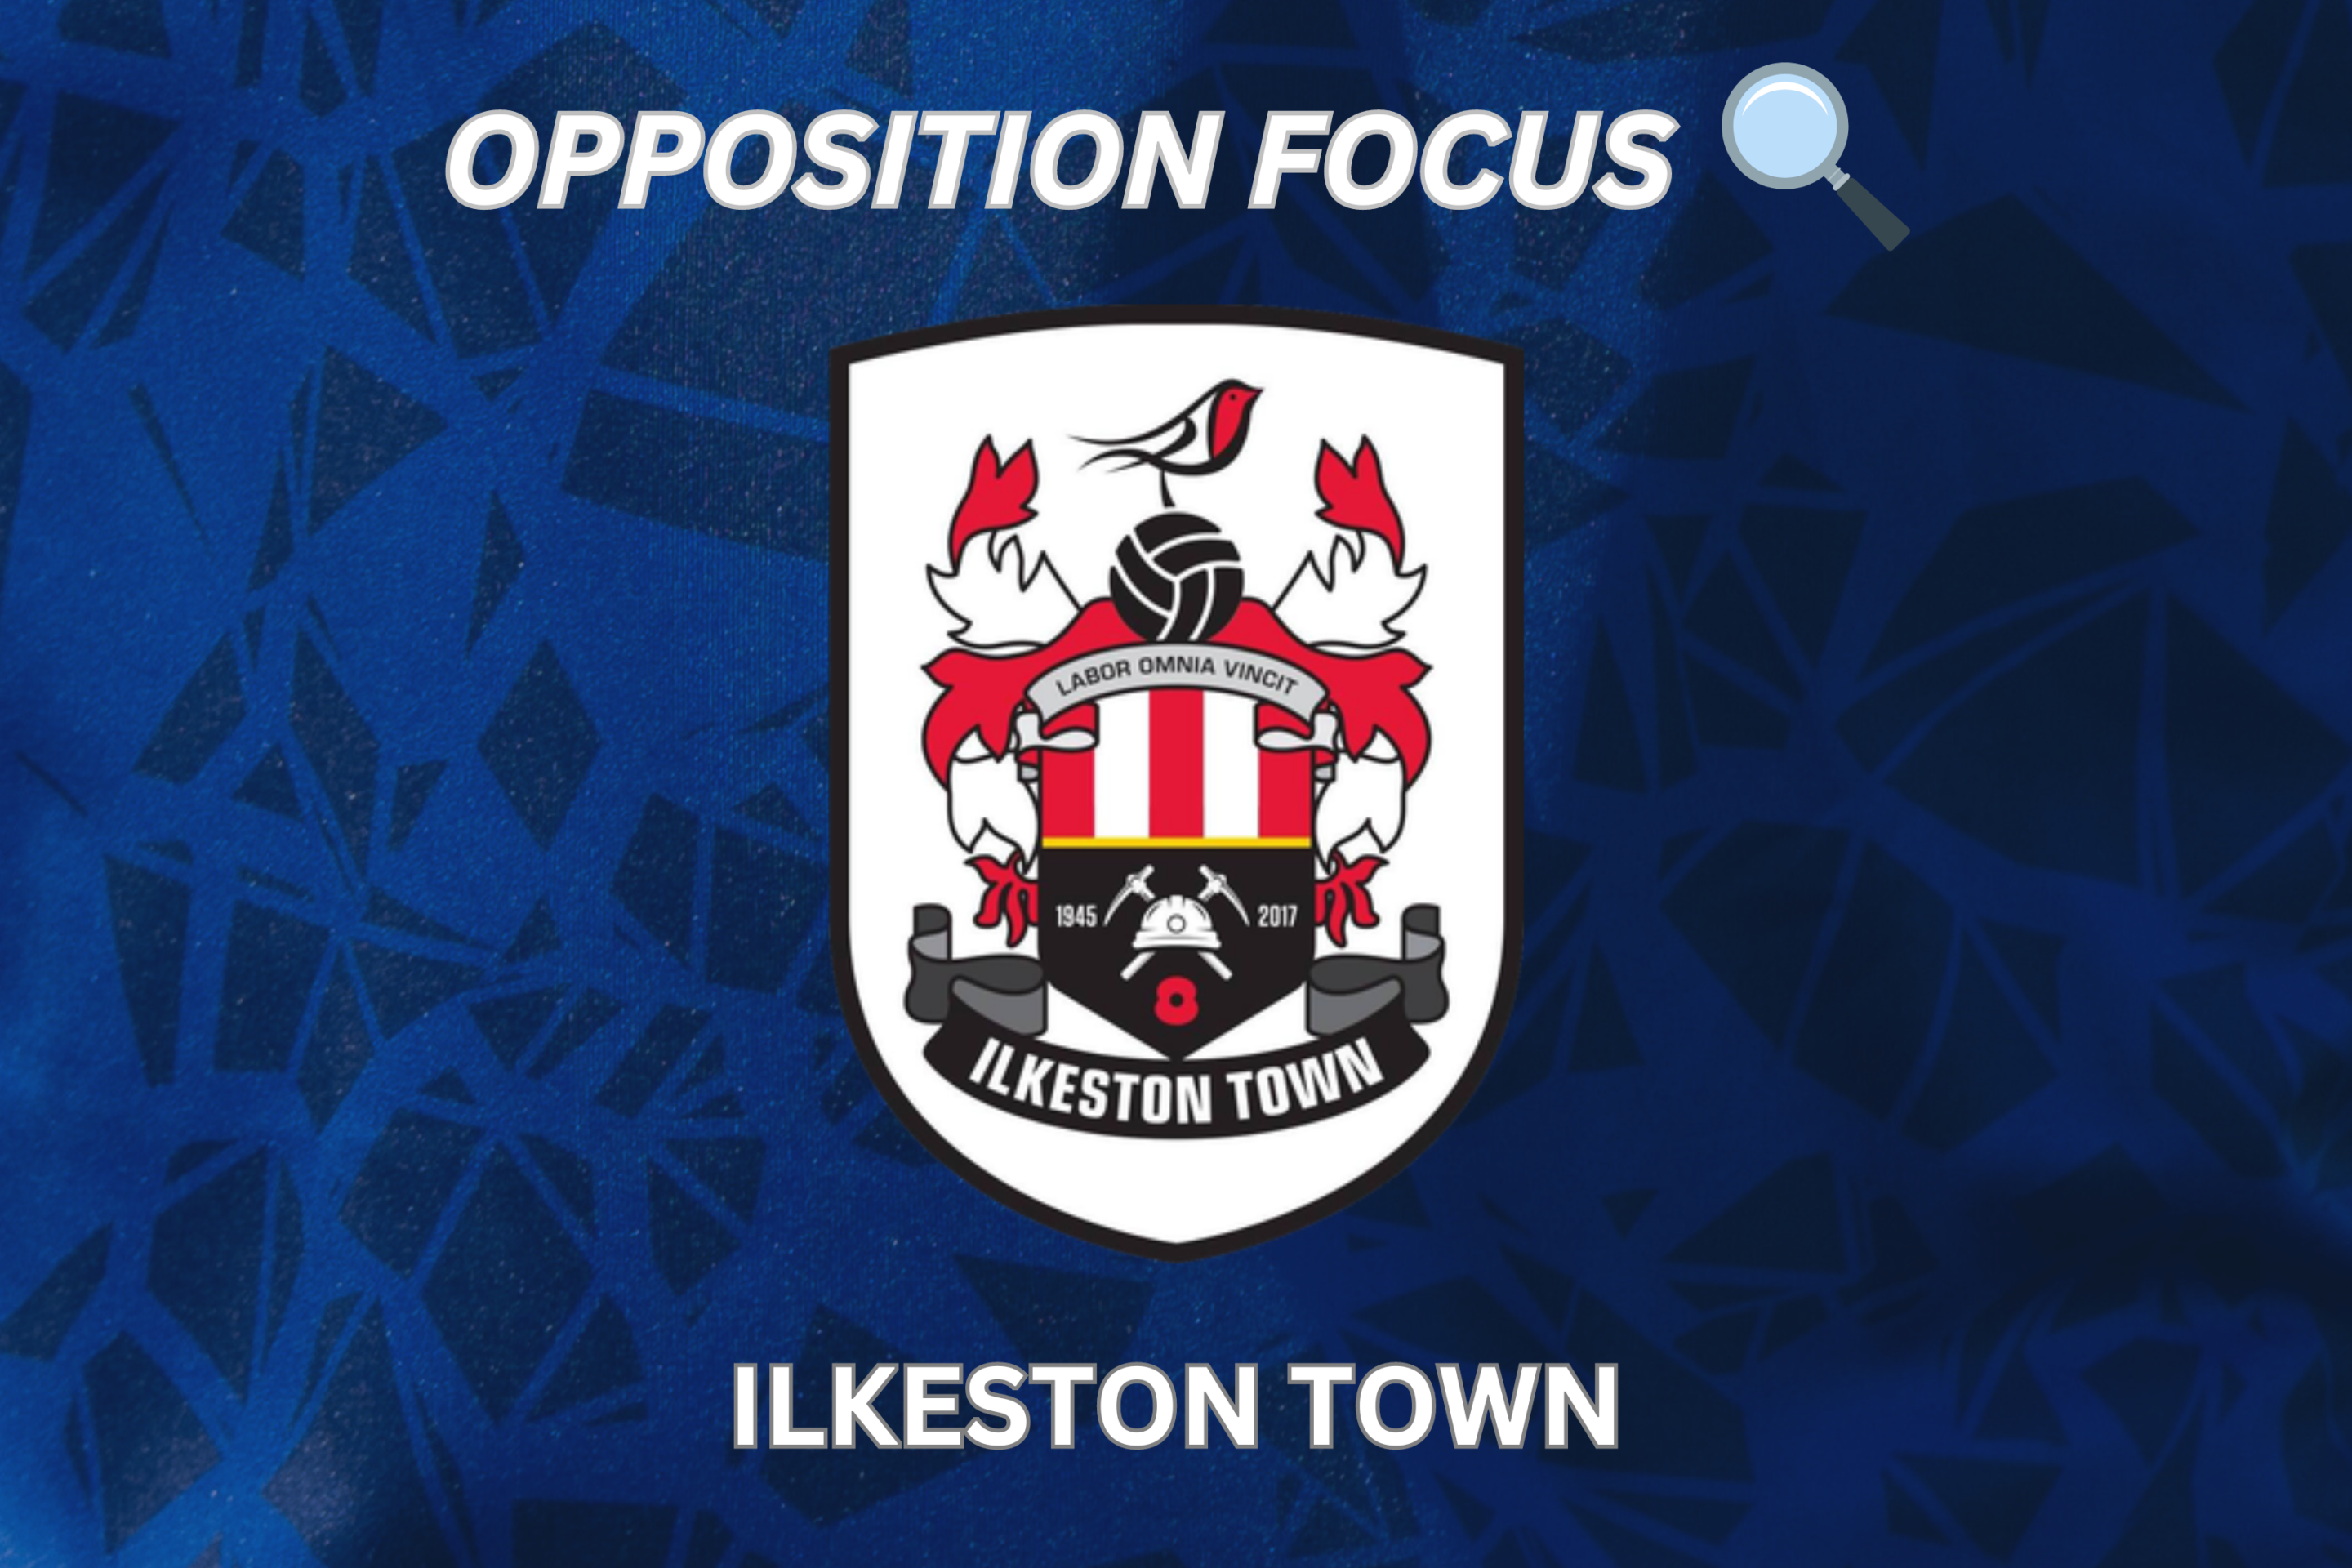 OPPOSITION FOCUS: ILKESTON TOWN